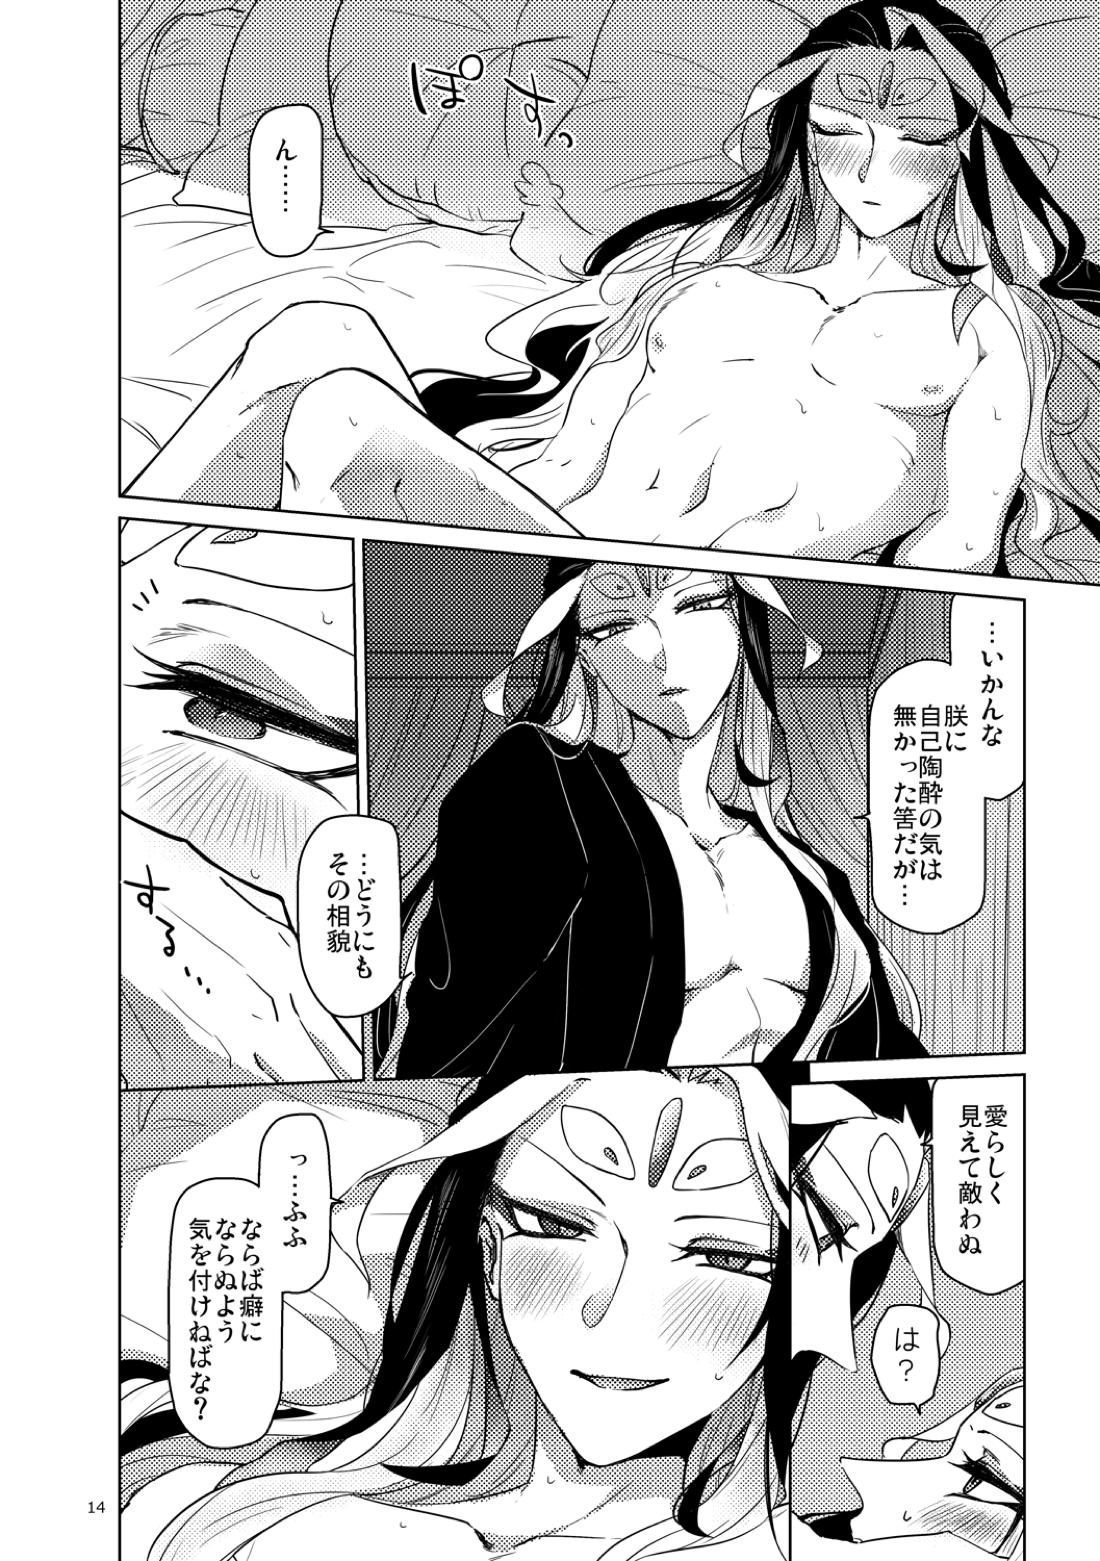 【BL漫画 Fate/Grand Order】男性体と無性体の始皇帝が同期するために媚薬を口にしながら肌を重ねるイチャイチャボーイズラブエッチ15